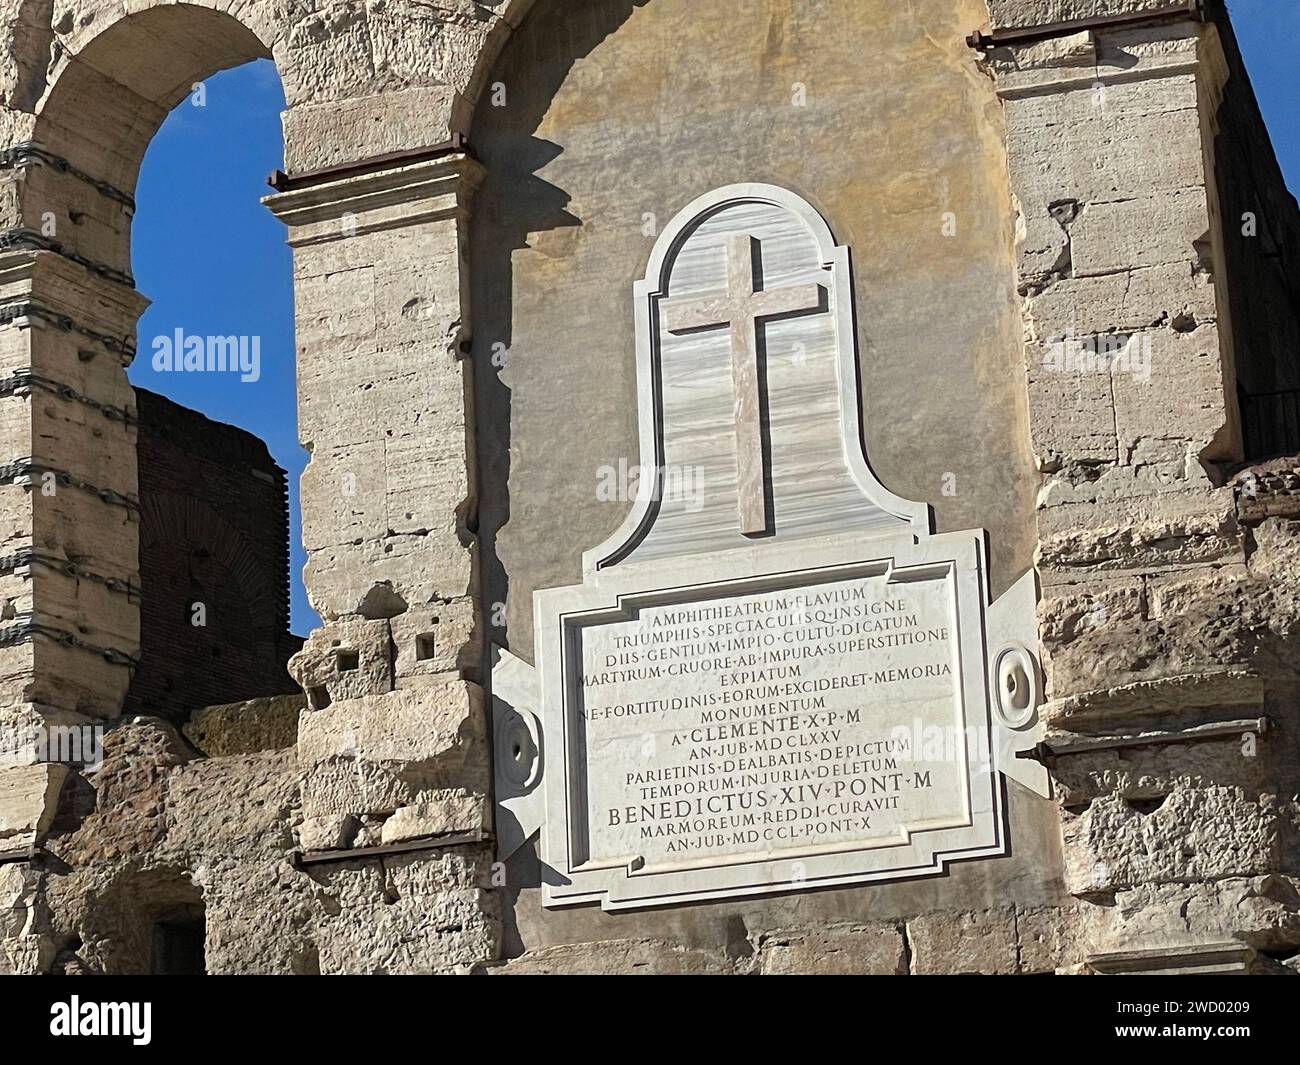 KOLOSSEUM, Rom. Die moderne Gedenktafel erinnert an die vielen hier getöteten Christen. Foto: Tony Gale Stockfoto